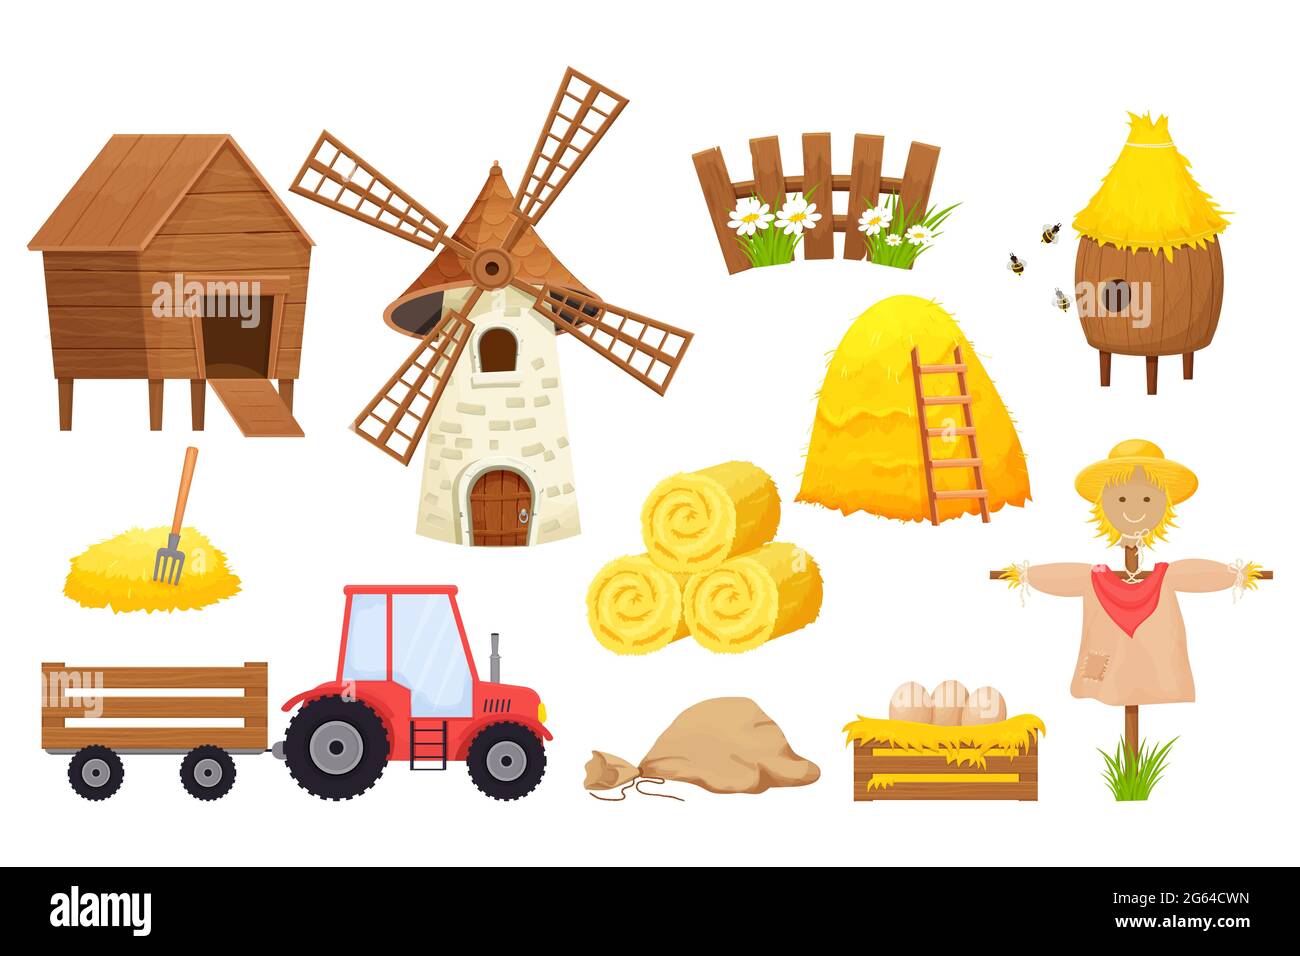 Bauernhof mit Heuballen, Vogelscheuche, Windmühle, Traktor, Bienenstock in Cartoon-Stil isoliert auf weißem Hintergrund. Landwirtschaftliche Sammlung, ländliche Elemente. Vektorgrafik Stock Vektor